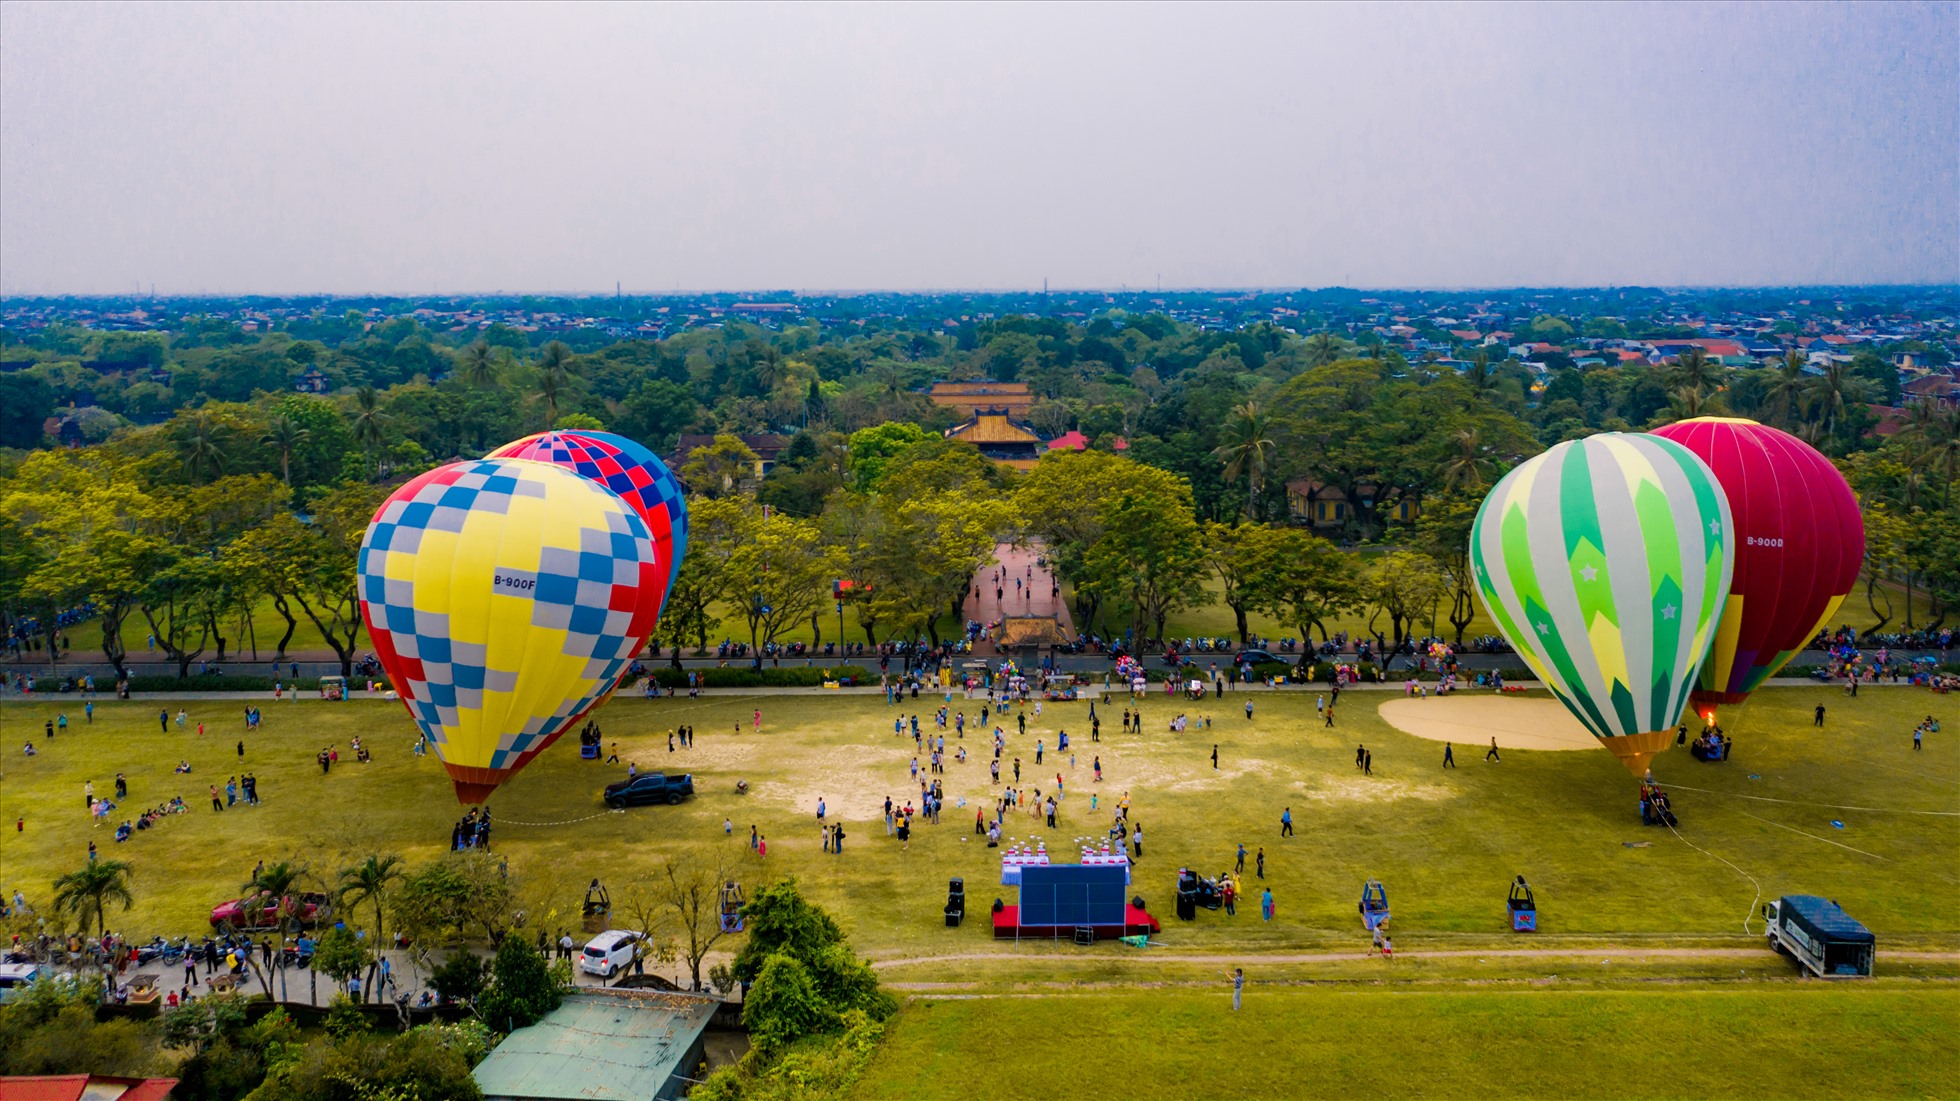 Bình Thuận tổ chức ngày hội khinh khí cầu | Mekong ASEAN